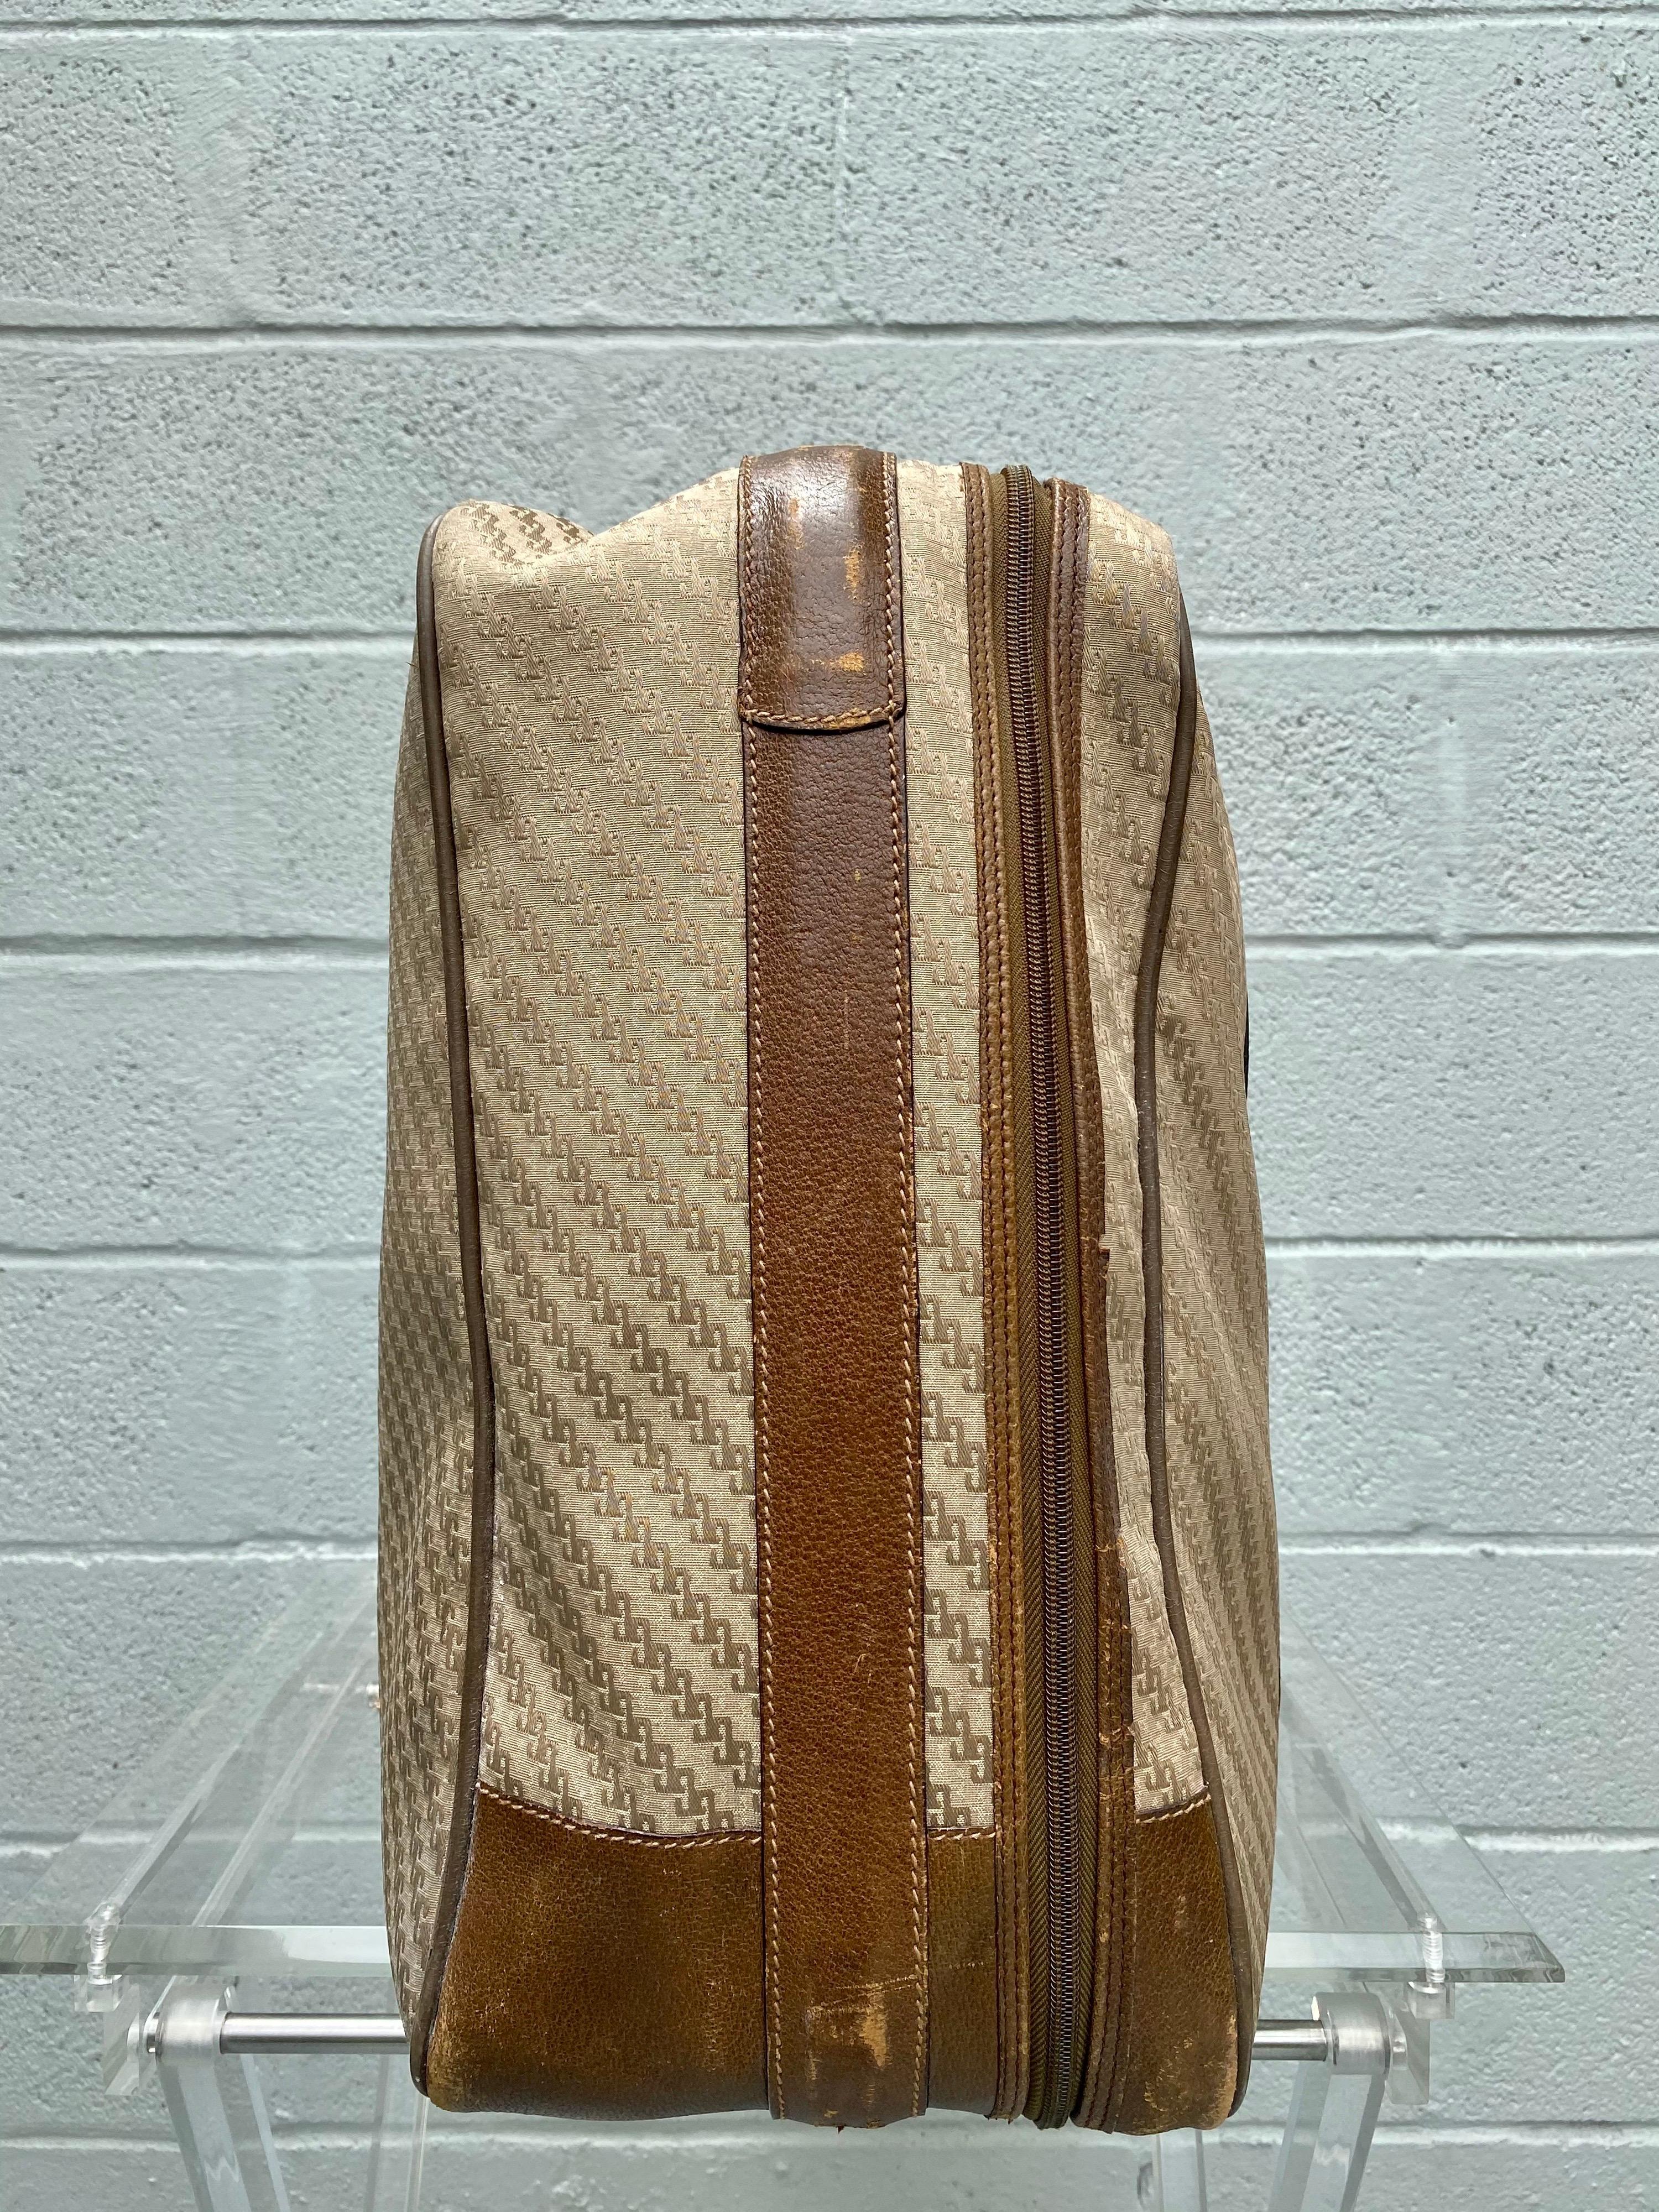 vintage gucci suitcase